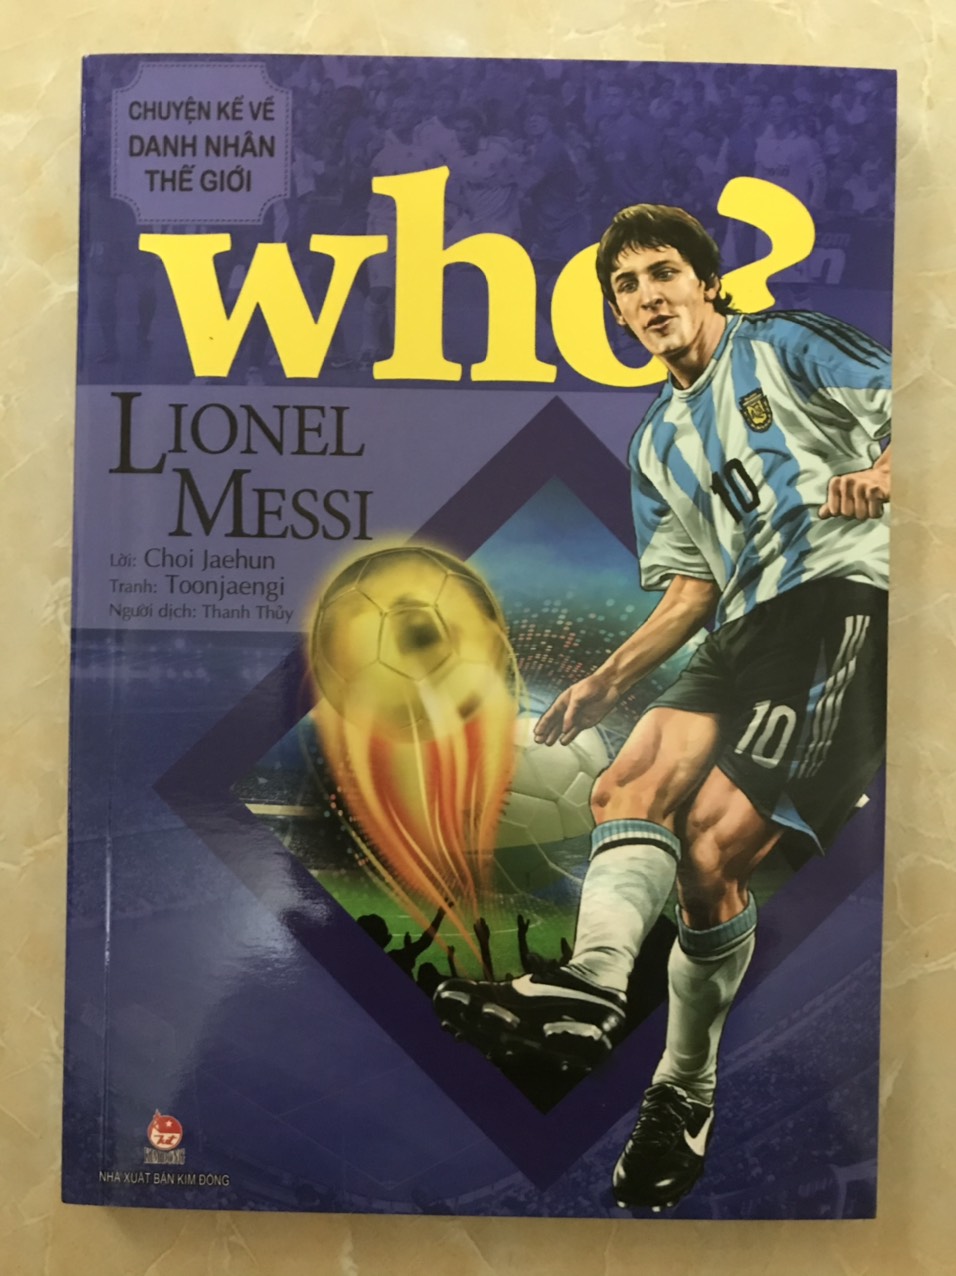 WHO? Chuyện kể về danh nhân thế giới - Lionel Messi